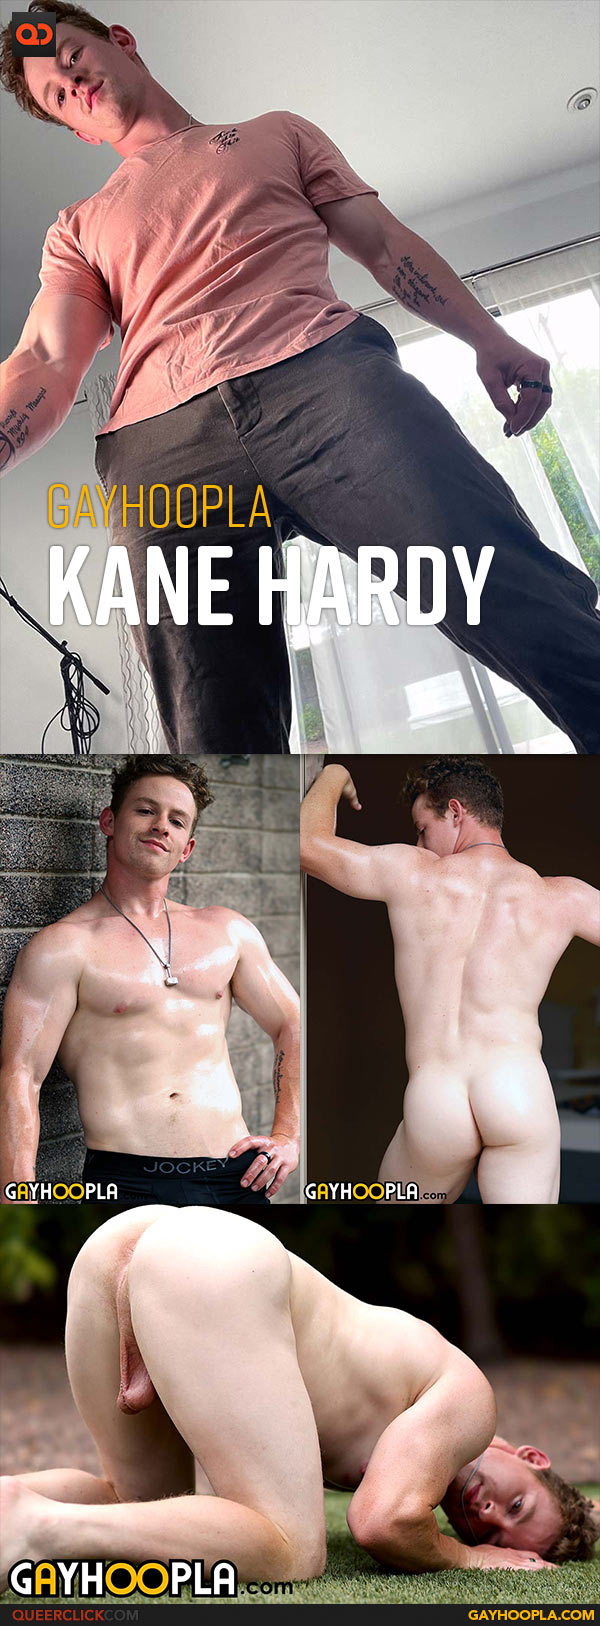 Gayhoopla: Kane Hardy